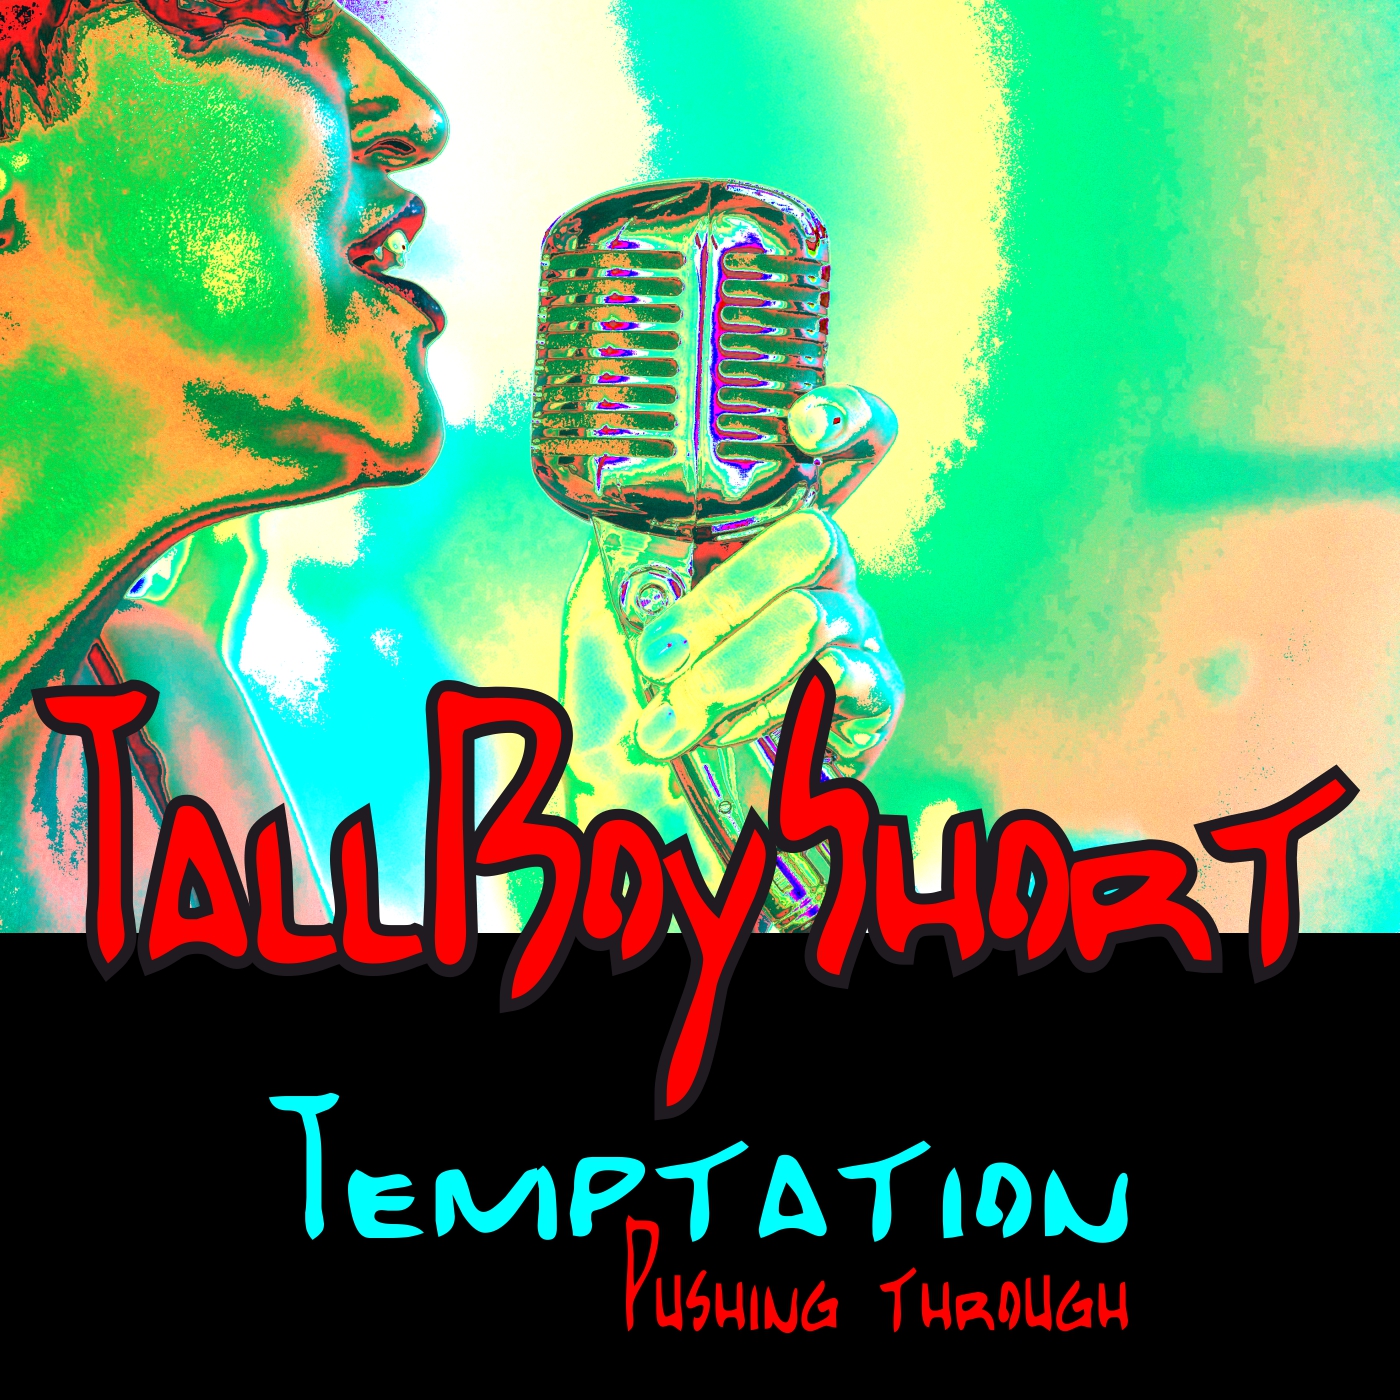 TallBoyShort Temptation Pushing through